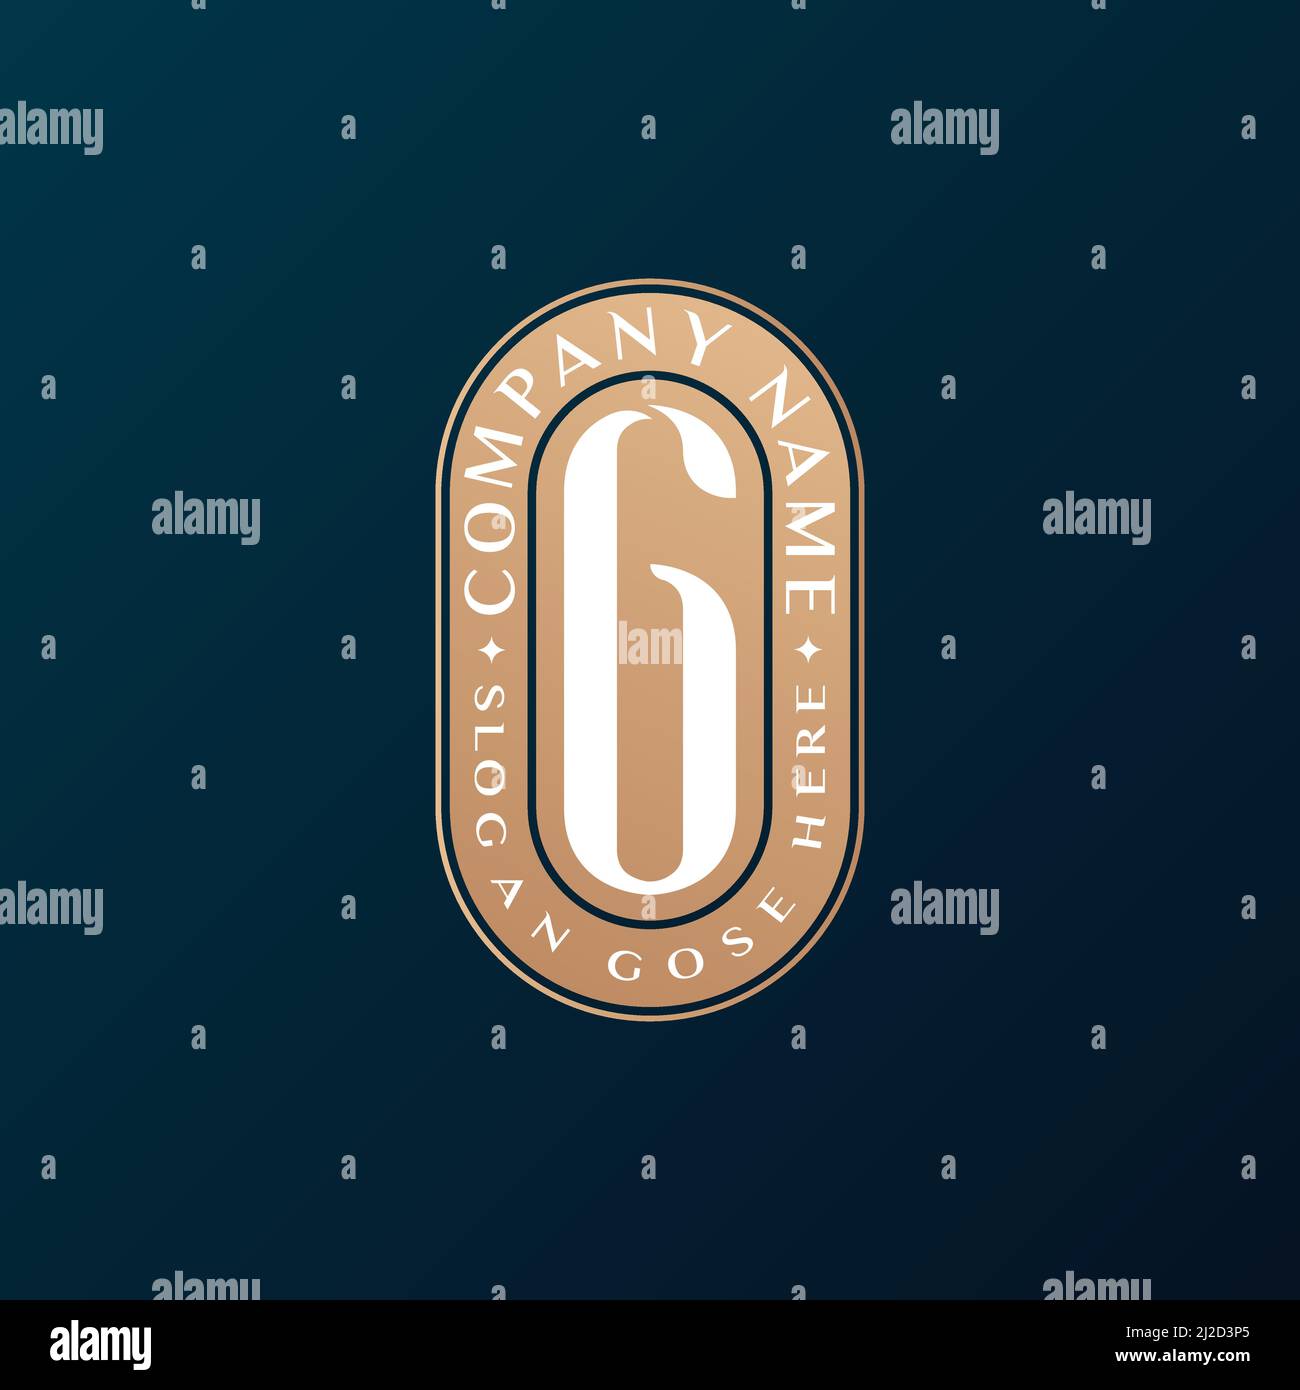 Abstrait Emblem Premium luxe identité d'entreprise élégant lettre G logo design Illustration de Vecteur